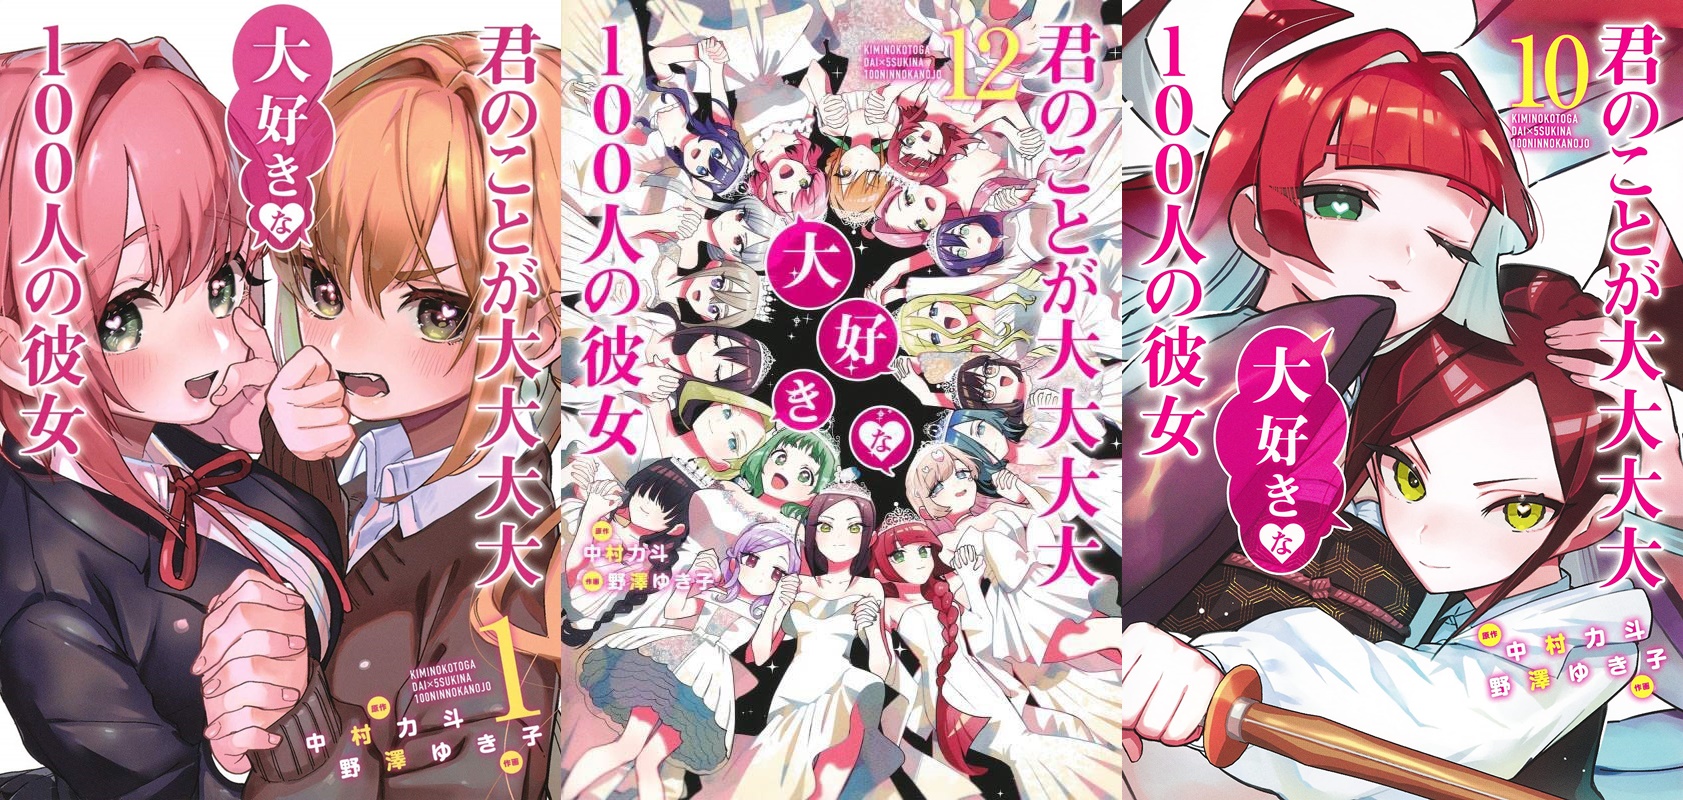 parte 2 ) O anime das 100 namoradas começou!😂😂😂 